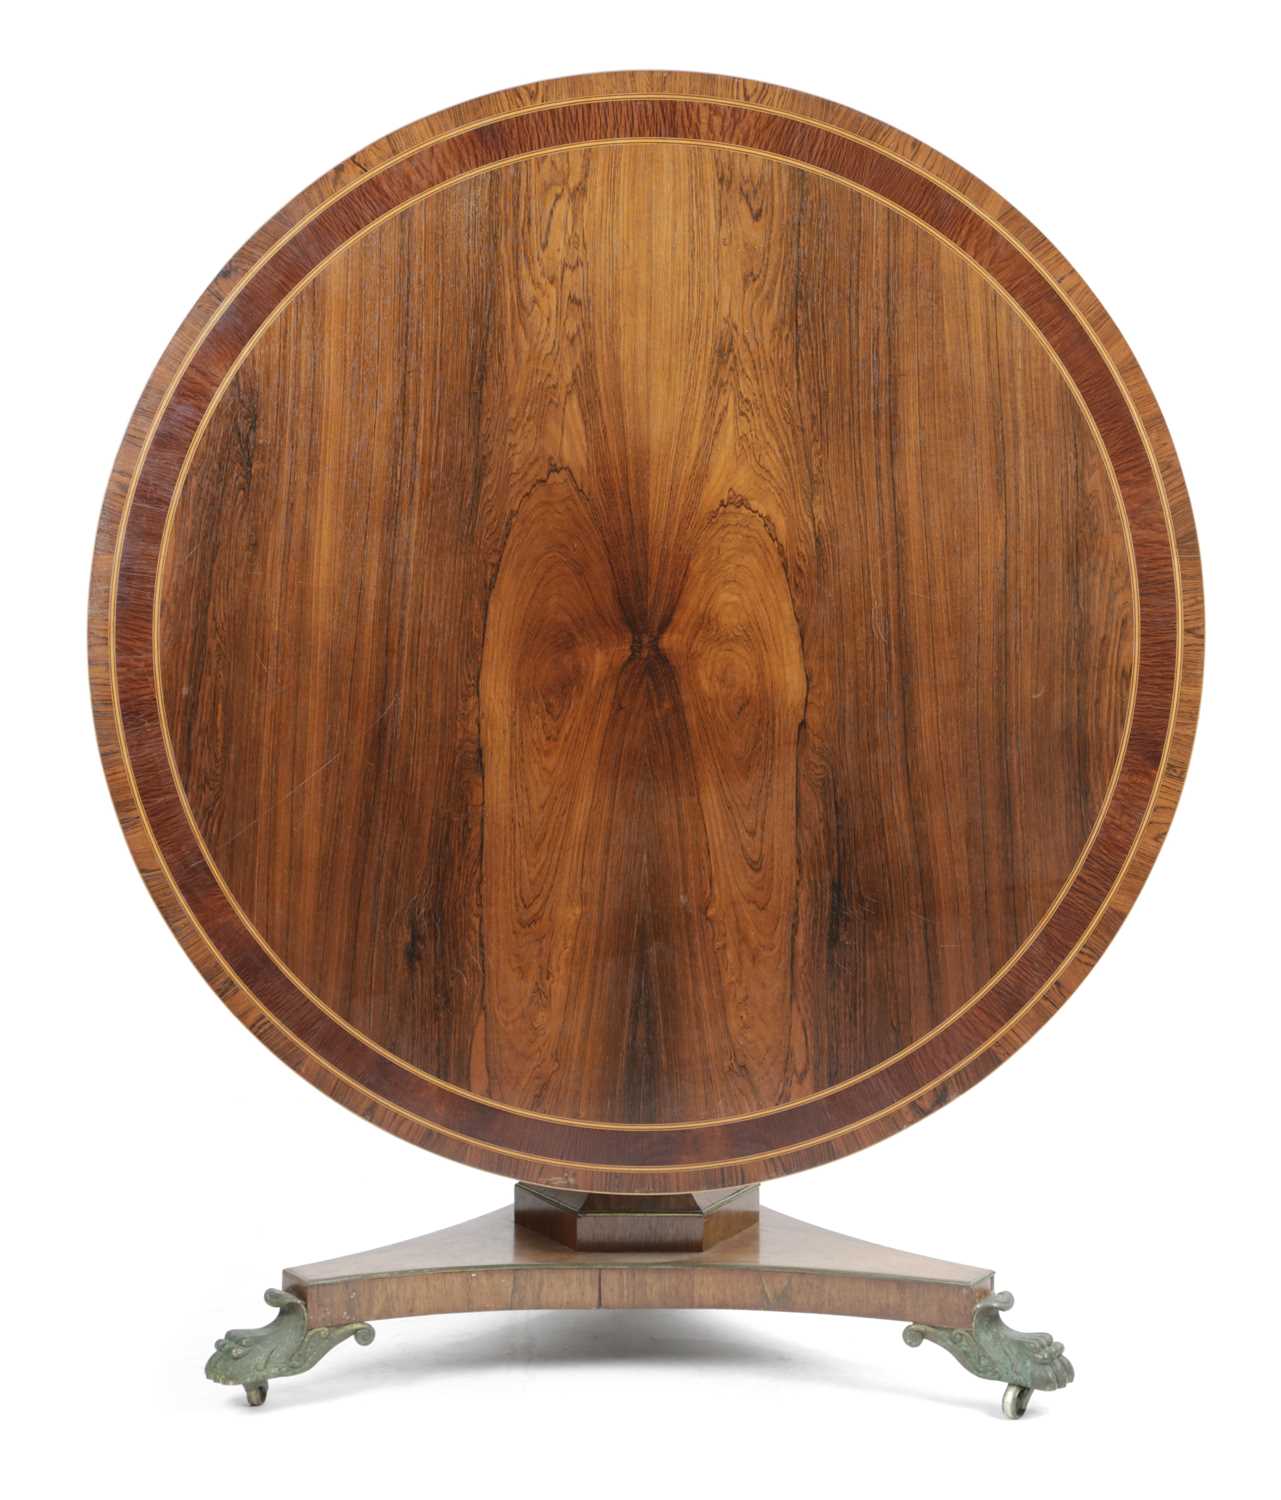 λ A REGENCY ROSEWOOD CENTRE TABLE EARLY 19TH CENTURY the circular tilt-top with partridge wood - Image 2 of 3